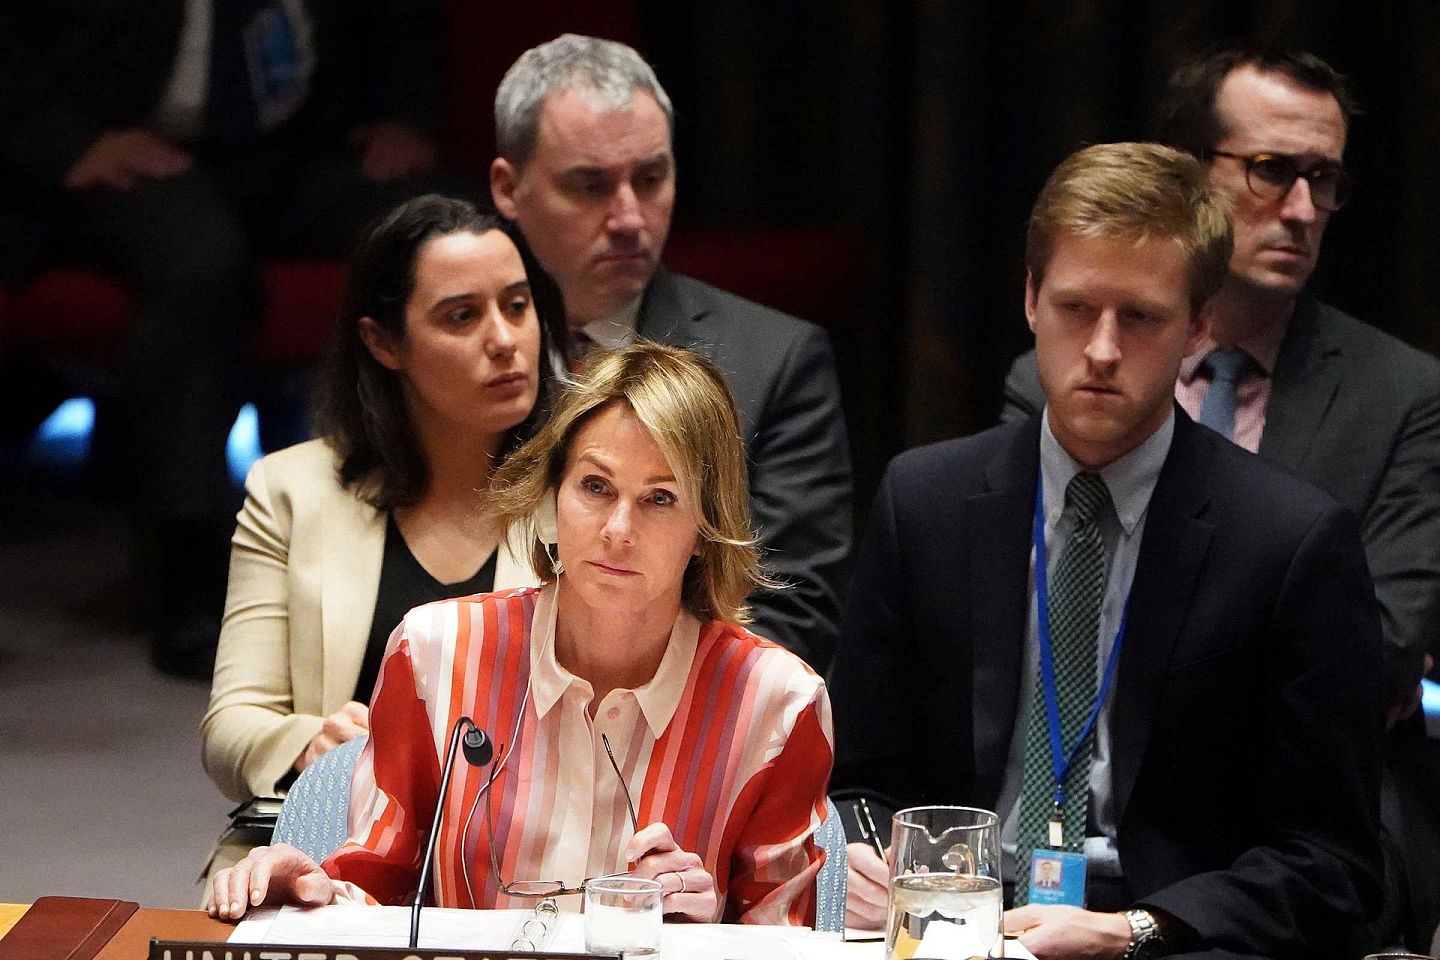 2020年6月30日，在联合国会议上，美国驻联合国代表克拉夫特批评北京，称联合国专家的声明“反映了中国人权的真实状况”。（Reuters）